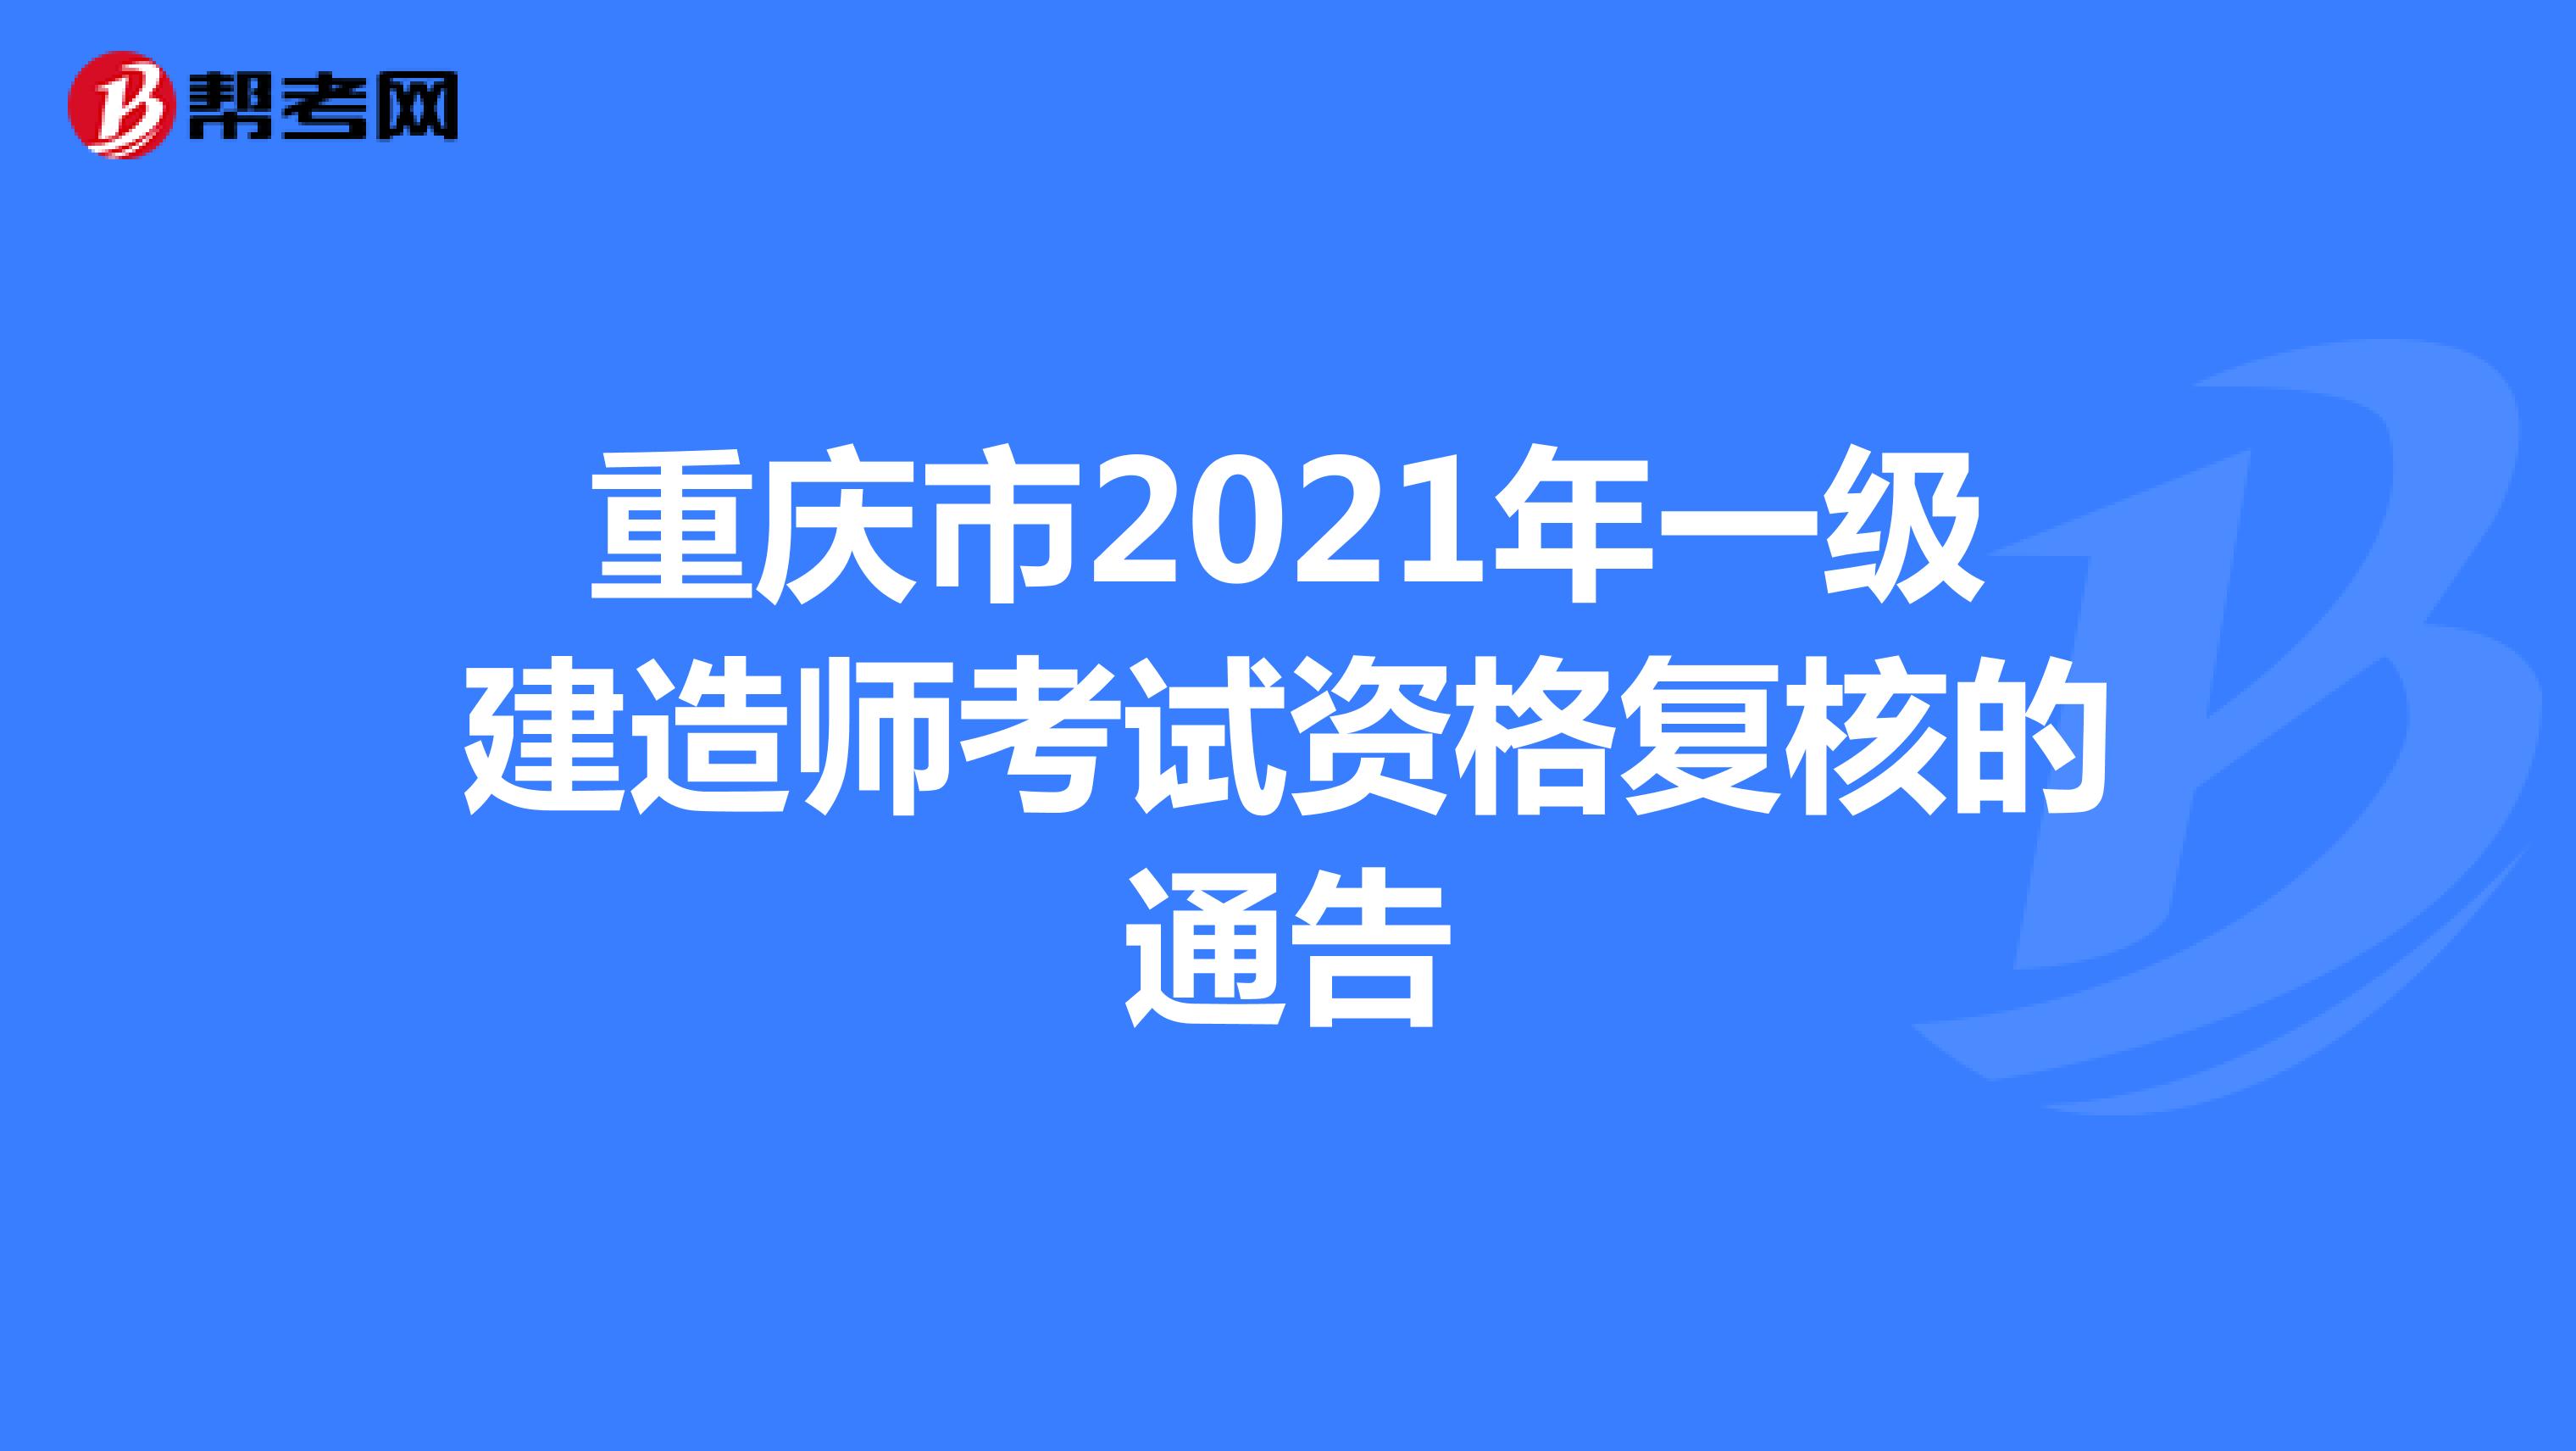 重庆市2021年一级建造师考试资格复核的通告